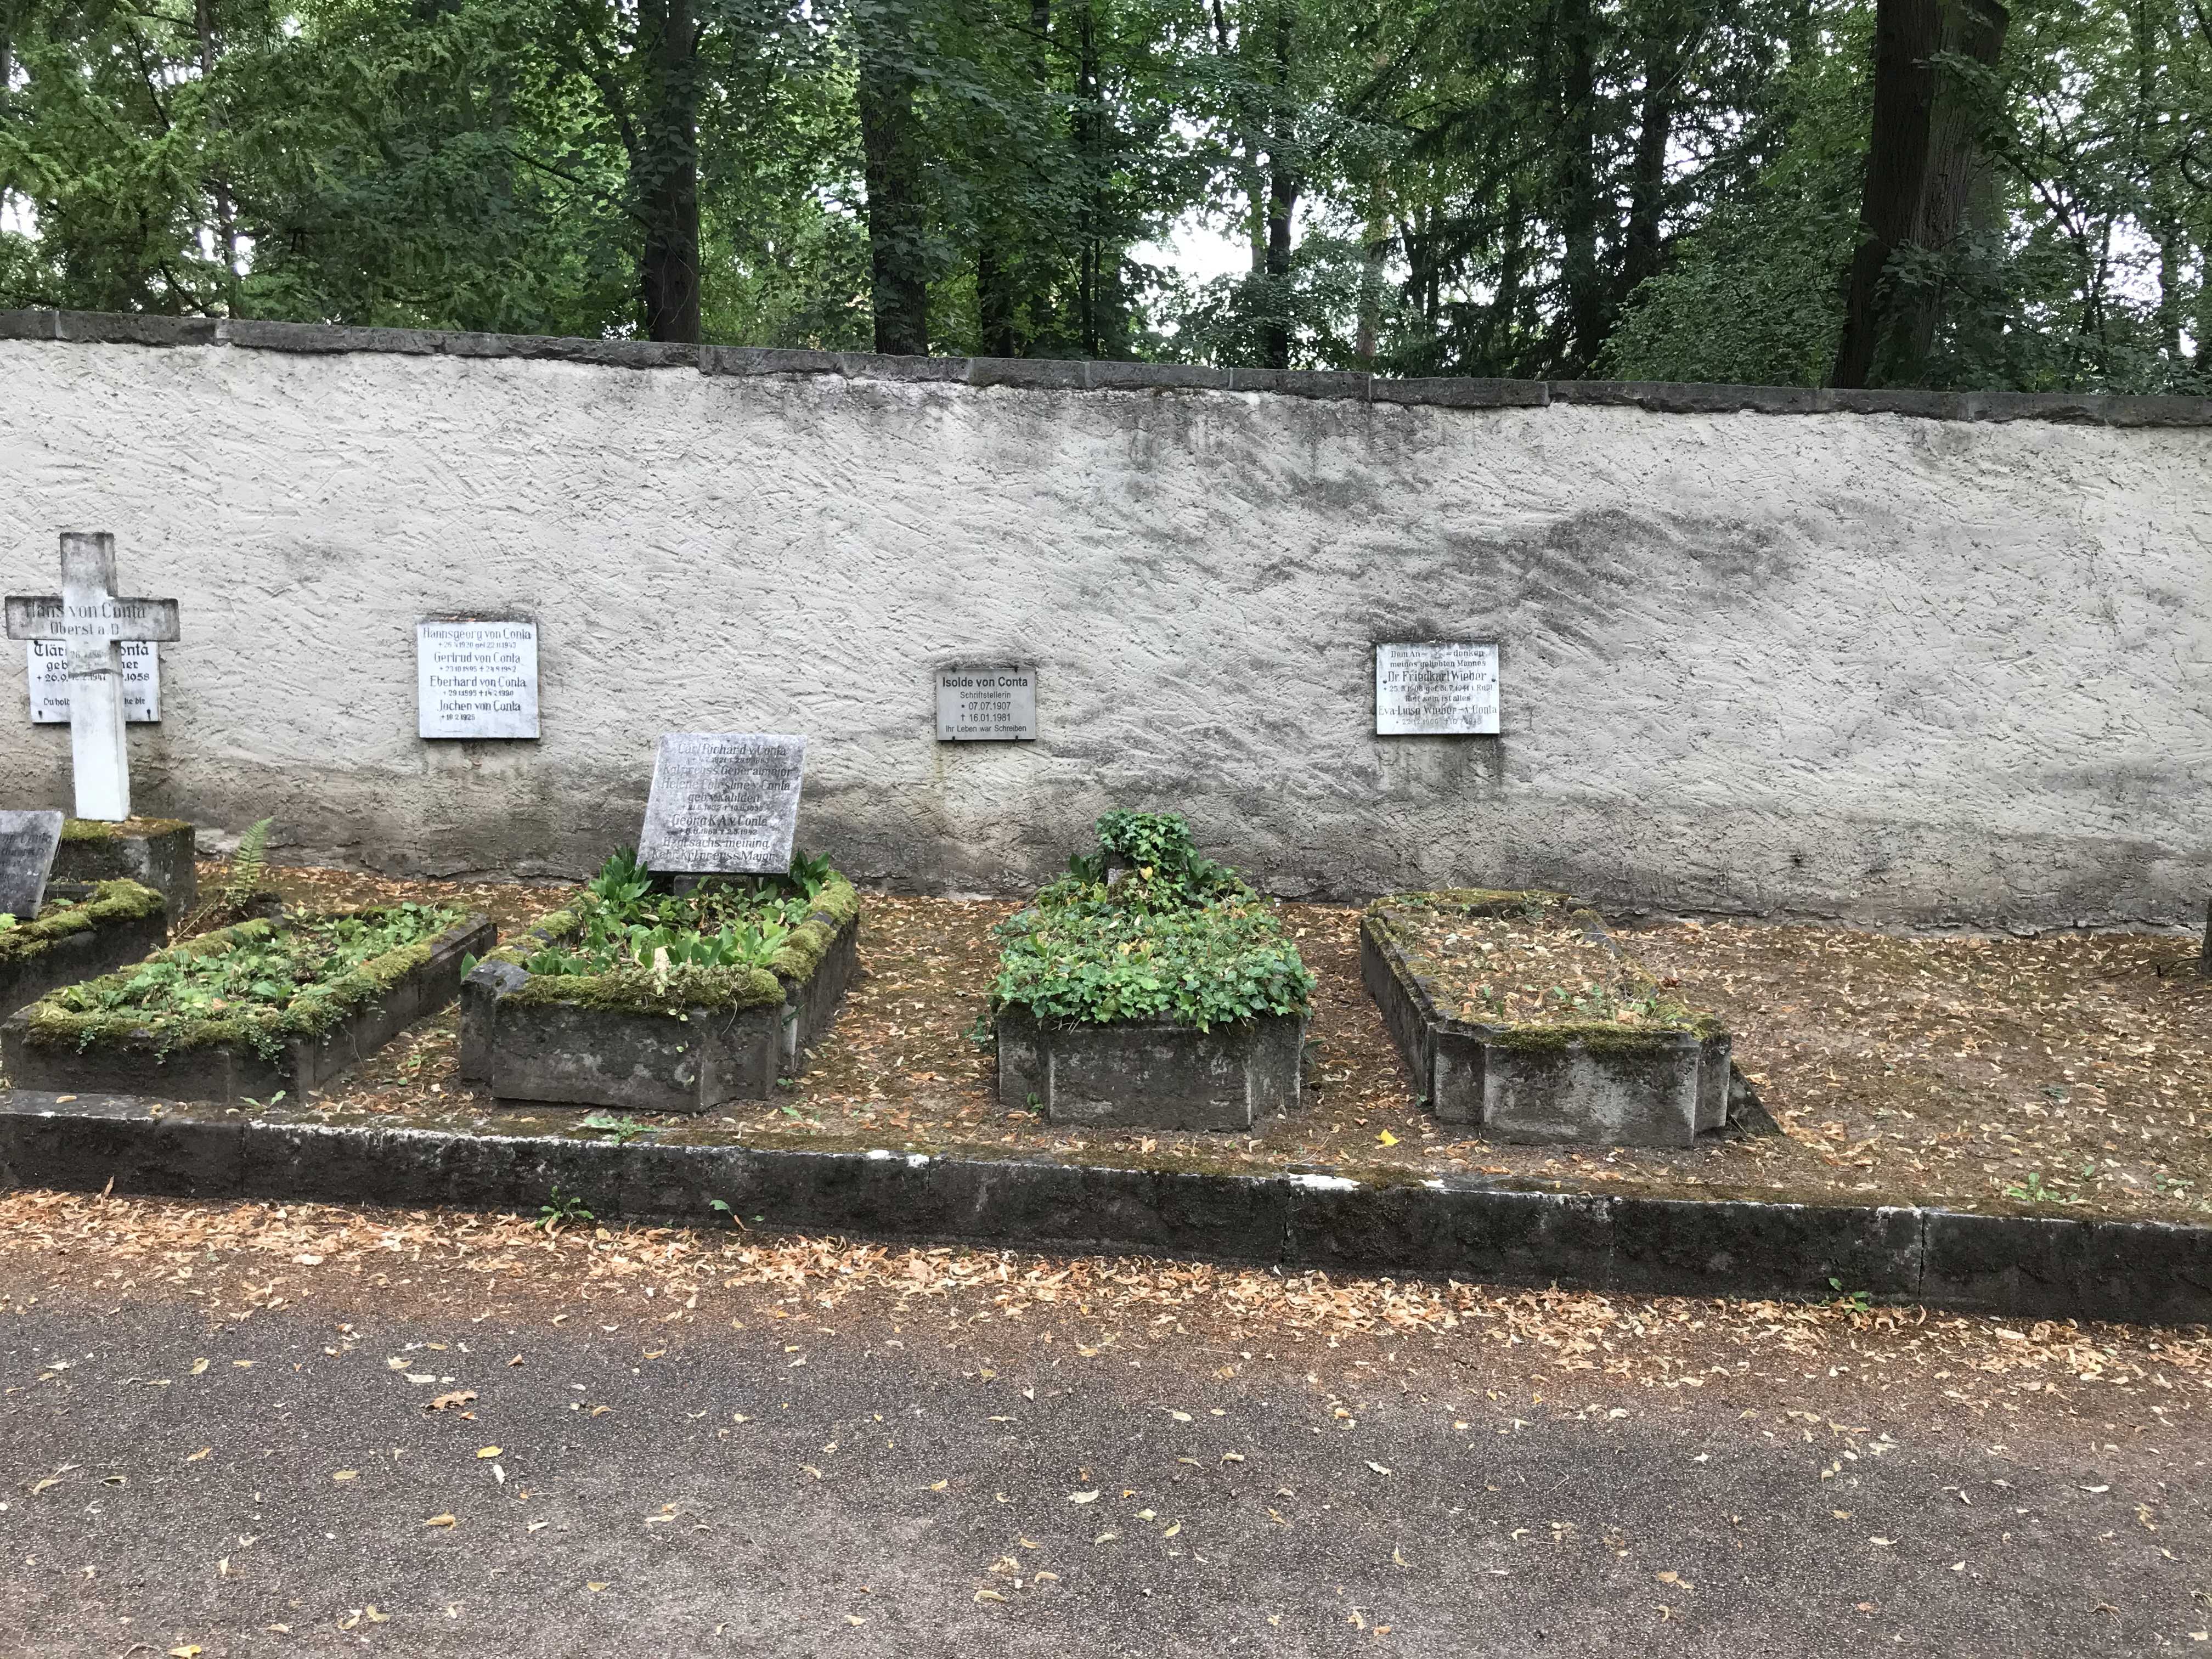 Grabstein Friedkarl Wieber, Hauptfriedhof Weimar, Thüringen, Deutschland